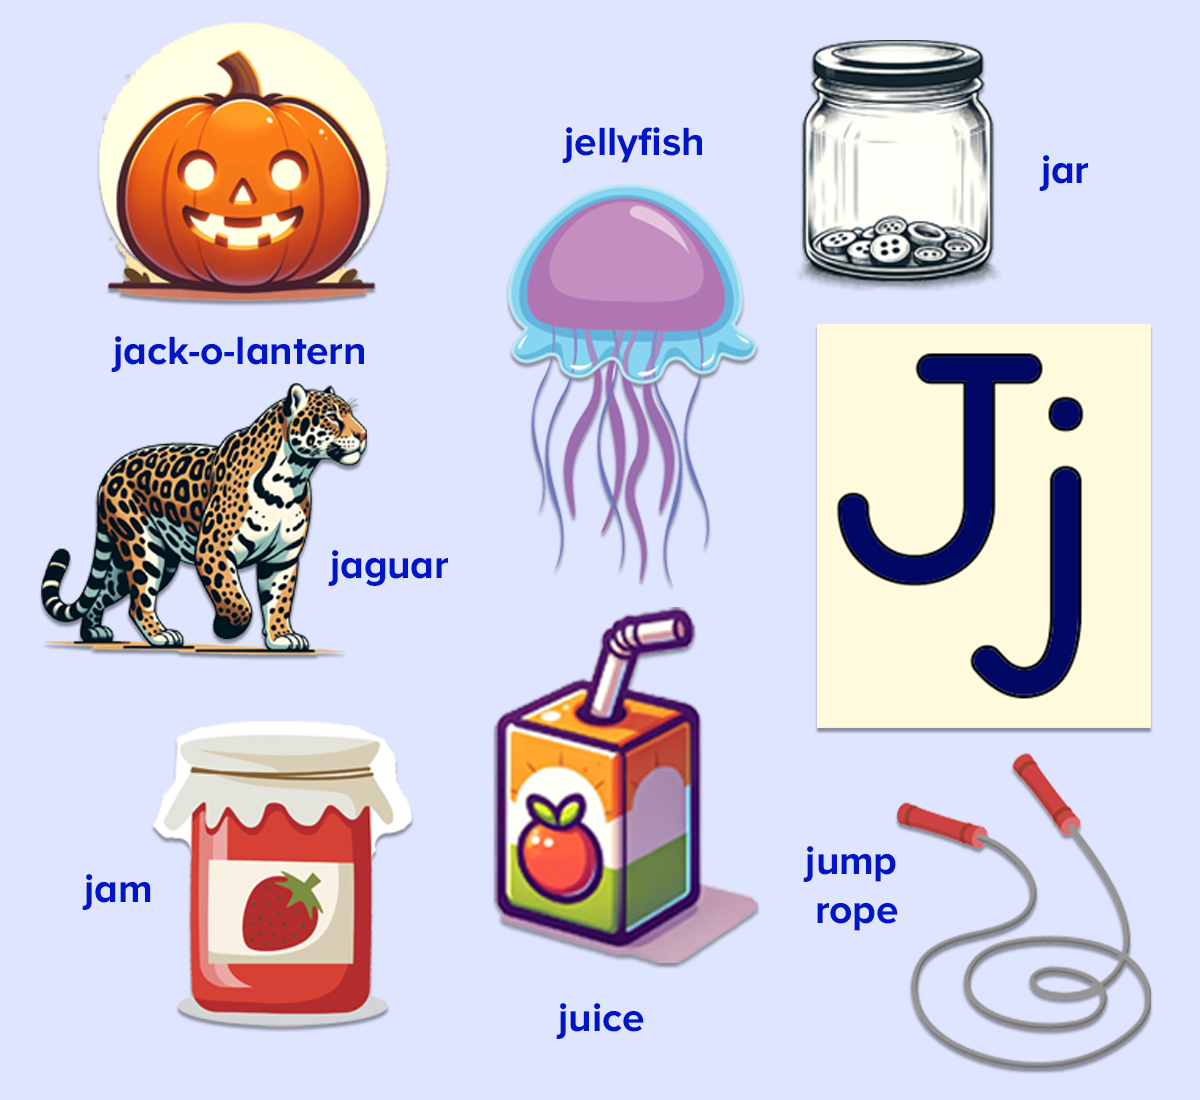 Letter J words for kids, jump rope, jar, jam, juice, jellyfish, jack-o-lantern, jaguar. 